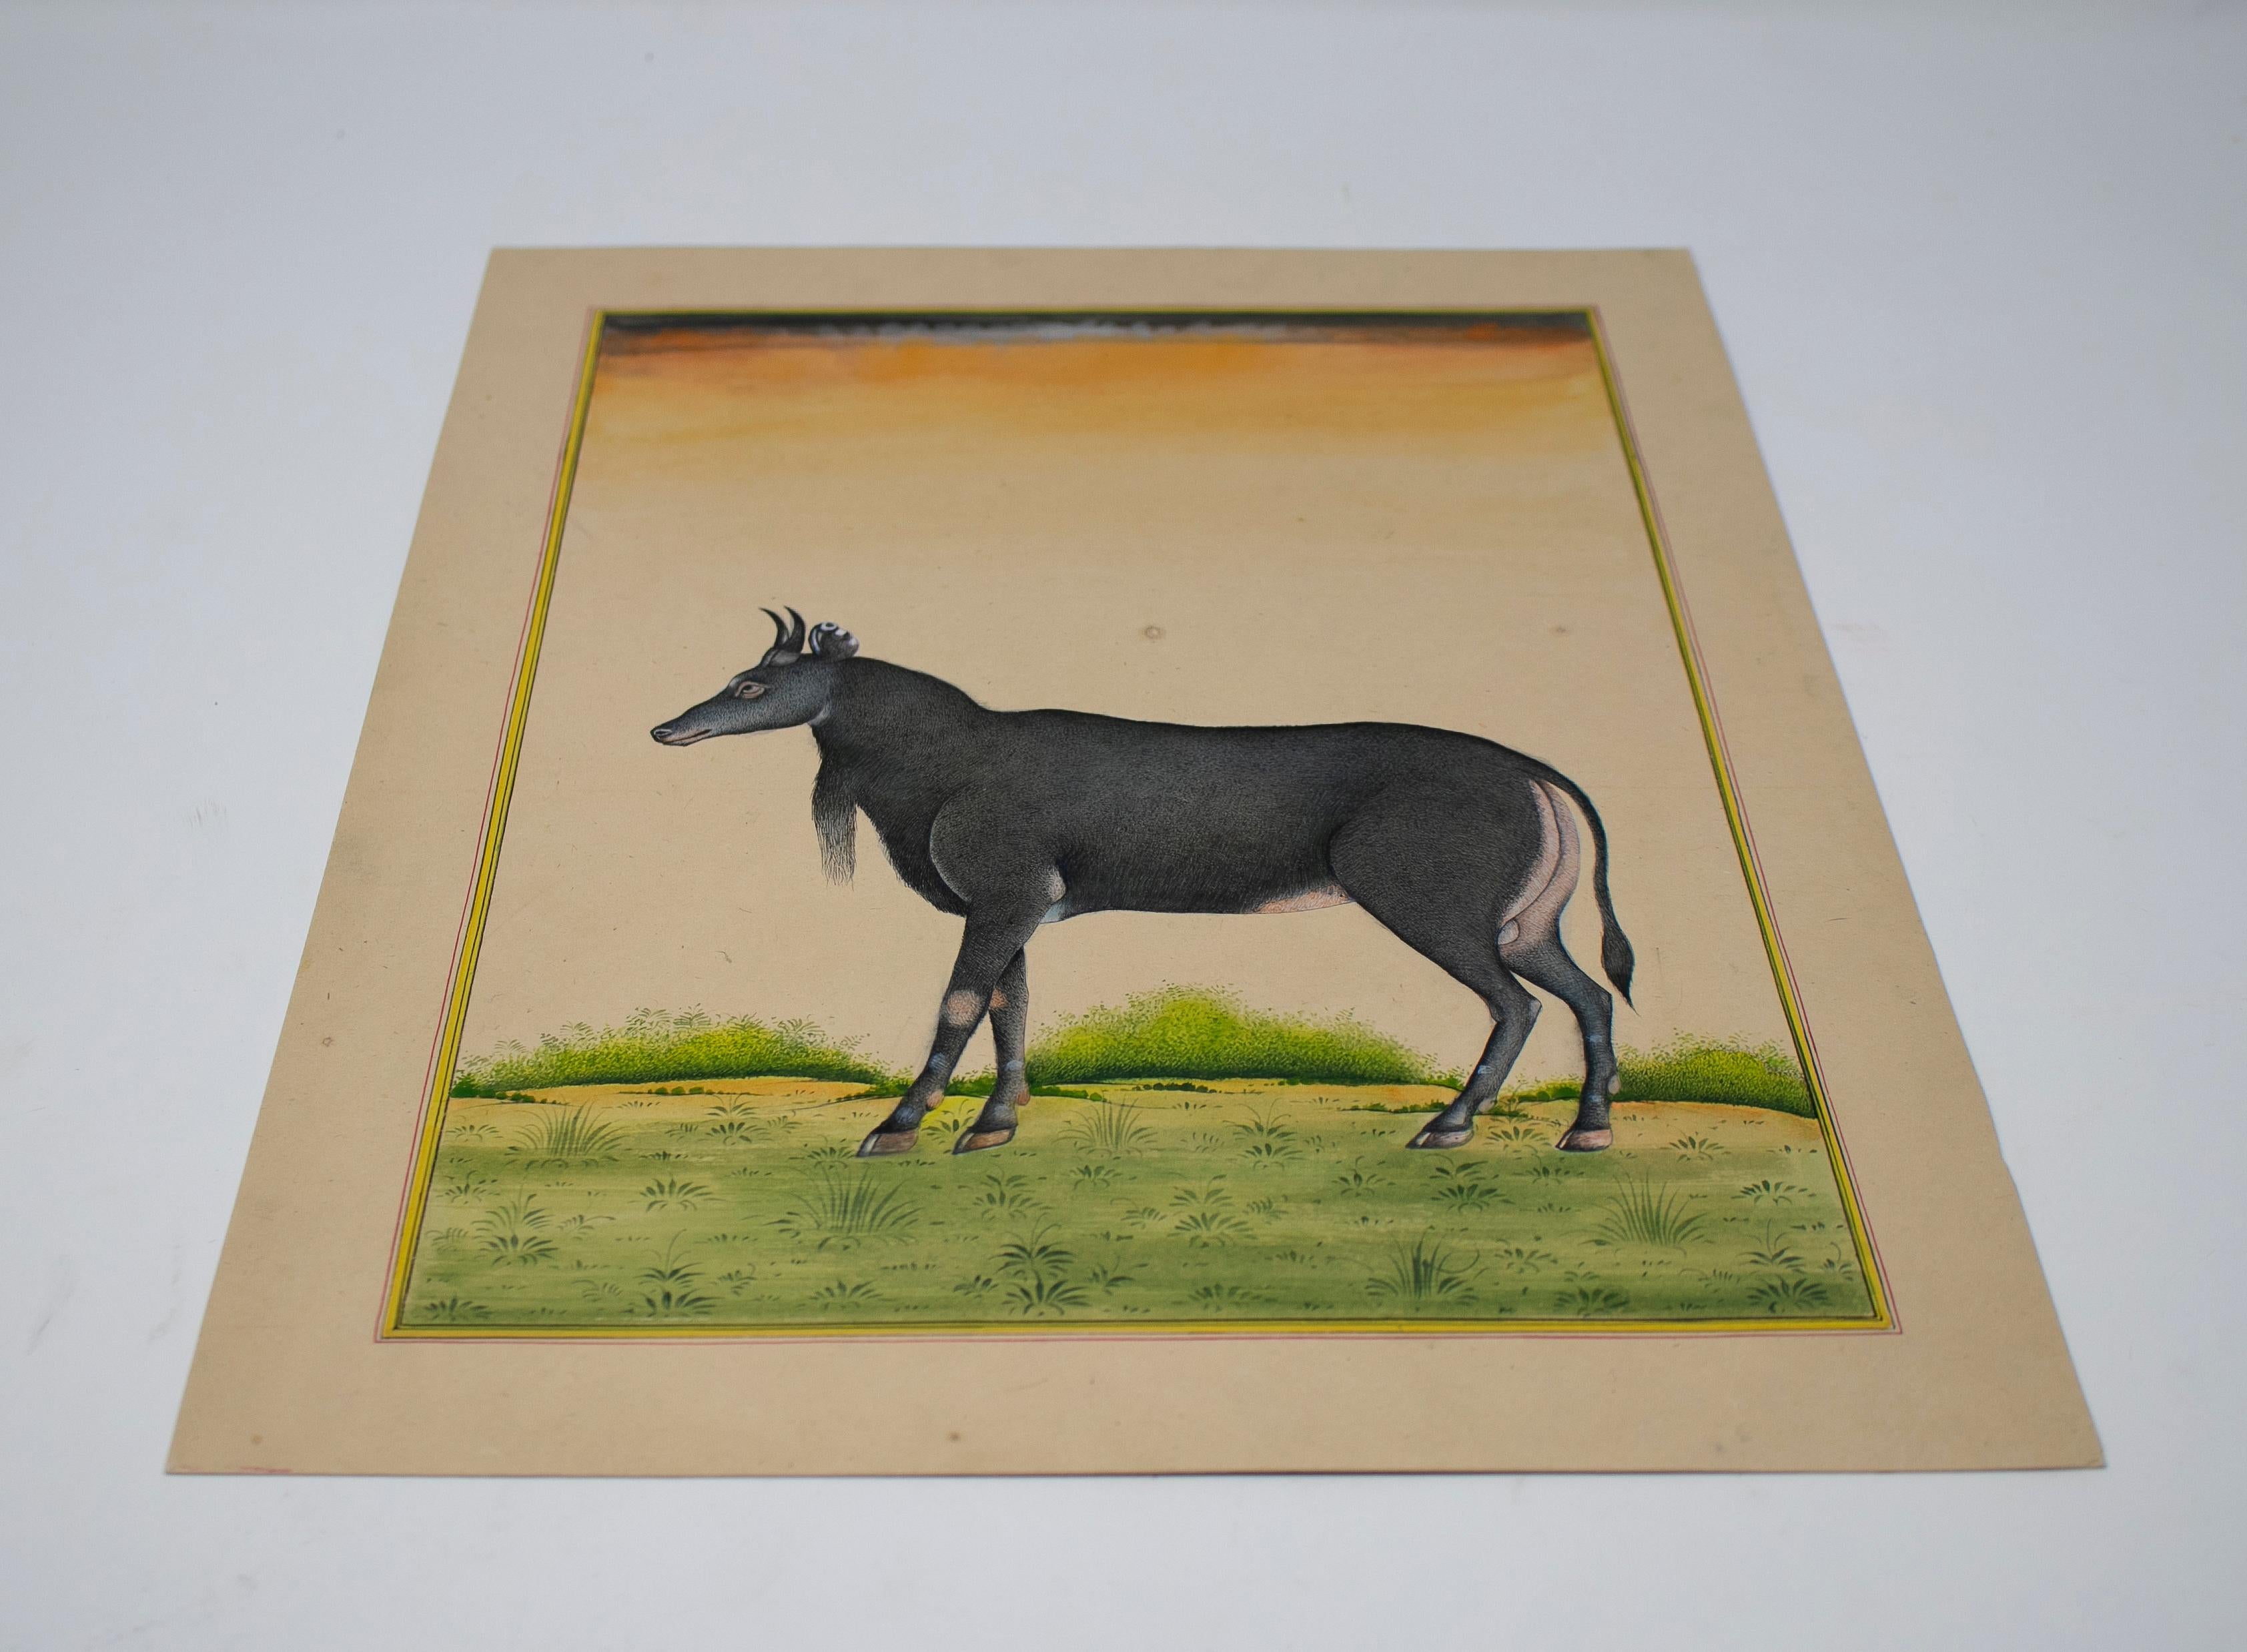 dessin sur papier indien des années 1970 représentant une chèvre, faisant partie d'une grande collection privée.

Dimensions avec cadre : 35 x 26 cm.